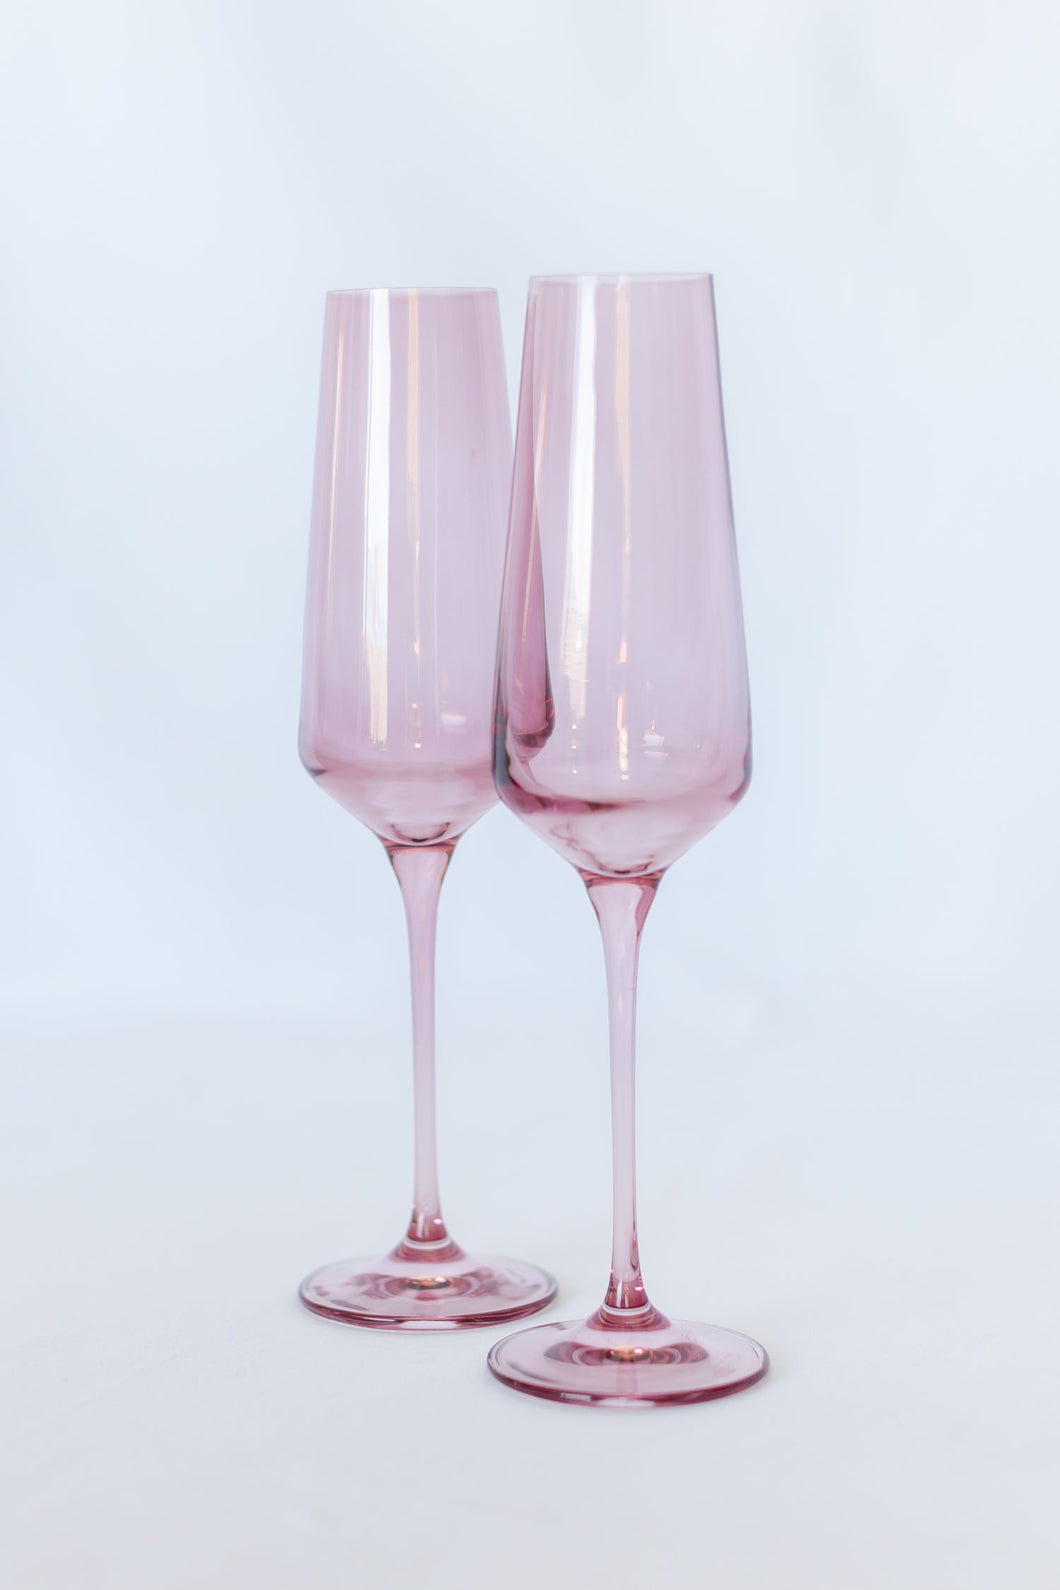 Estelle Champagne Flute Set of 2 Rose